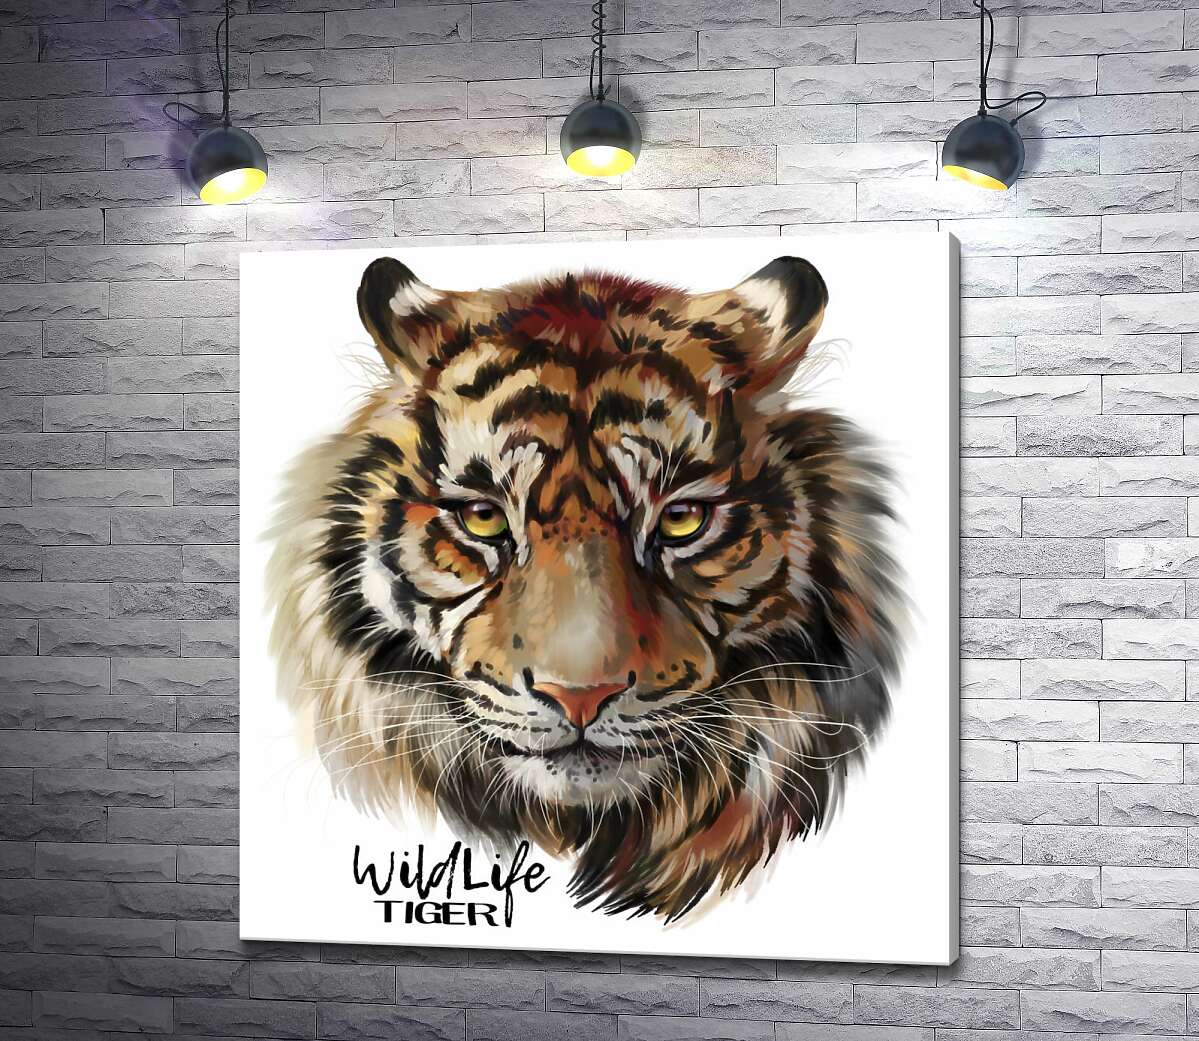 картина Пронзительный взгляд тигра рядом с надписью "wildlife tiger"